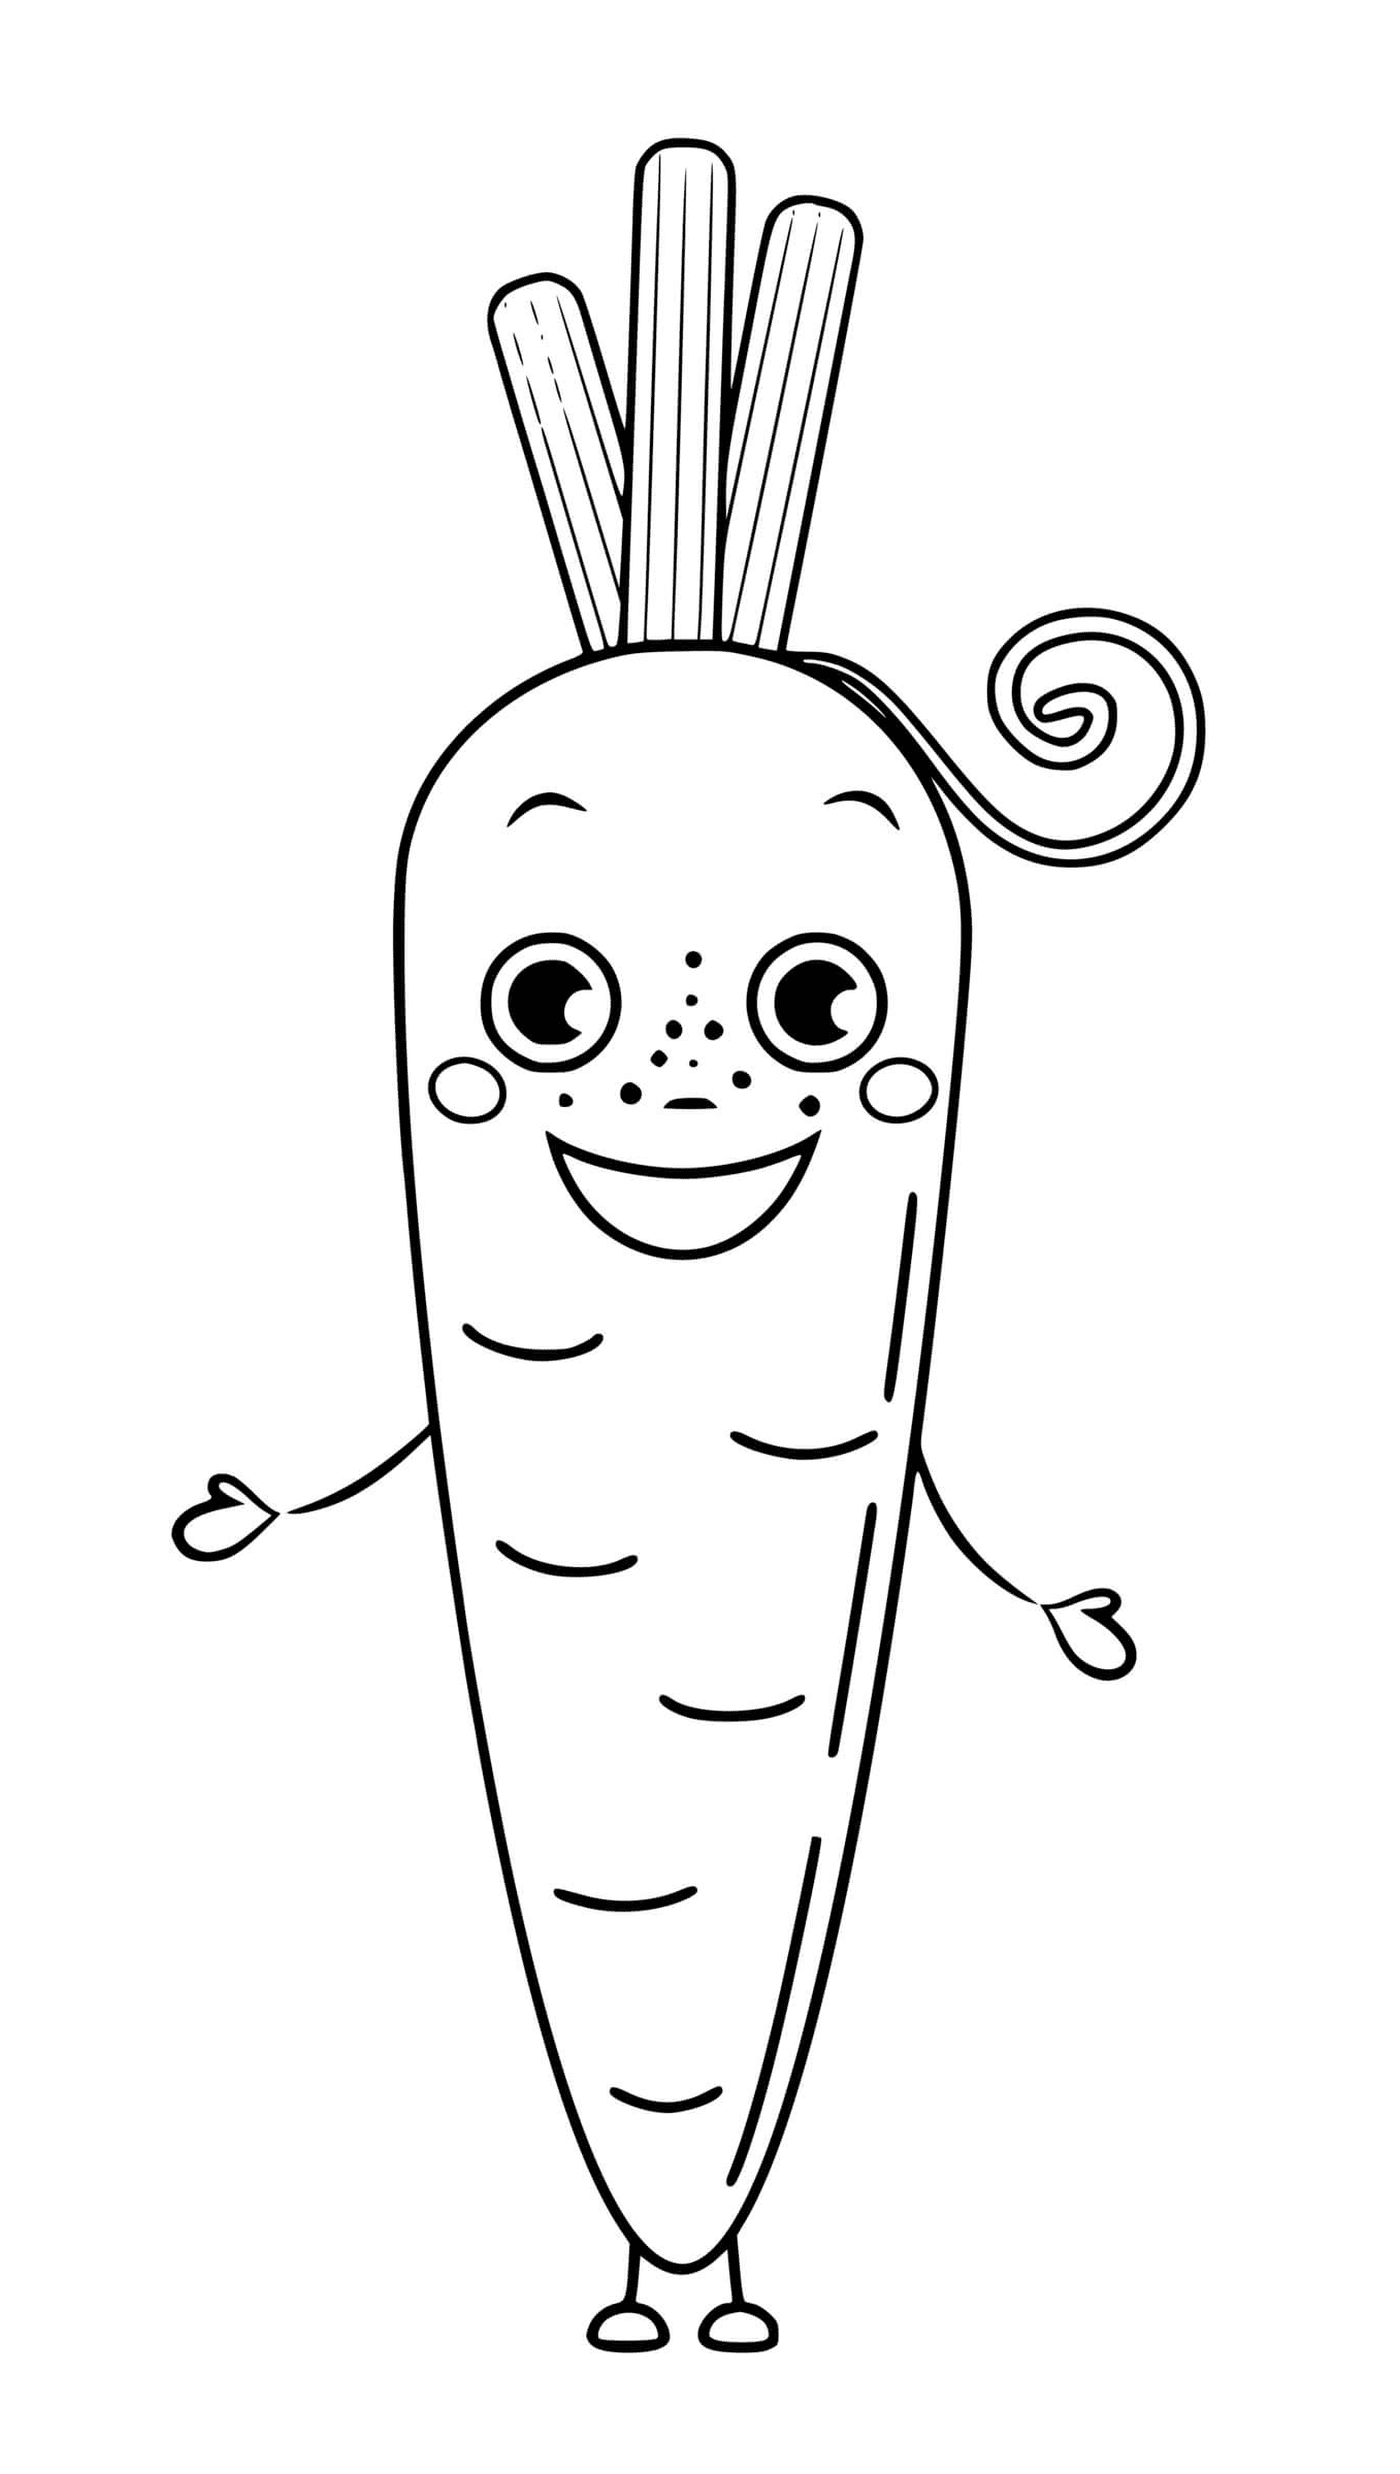  Gemüsekarotte mit Augen und Lächeln, eine Karotte mit einem lockigen Schwanz 